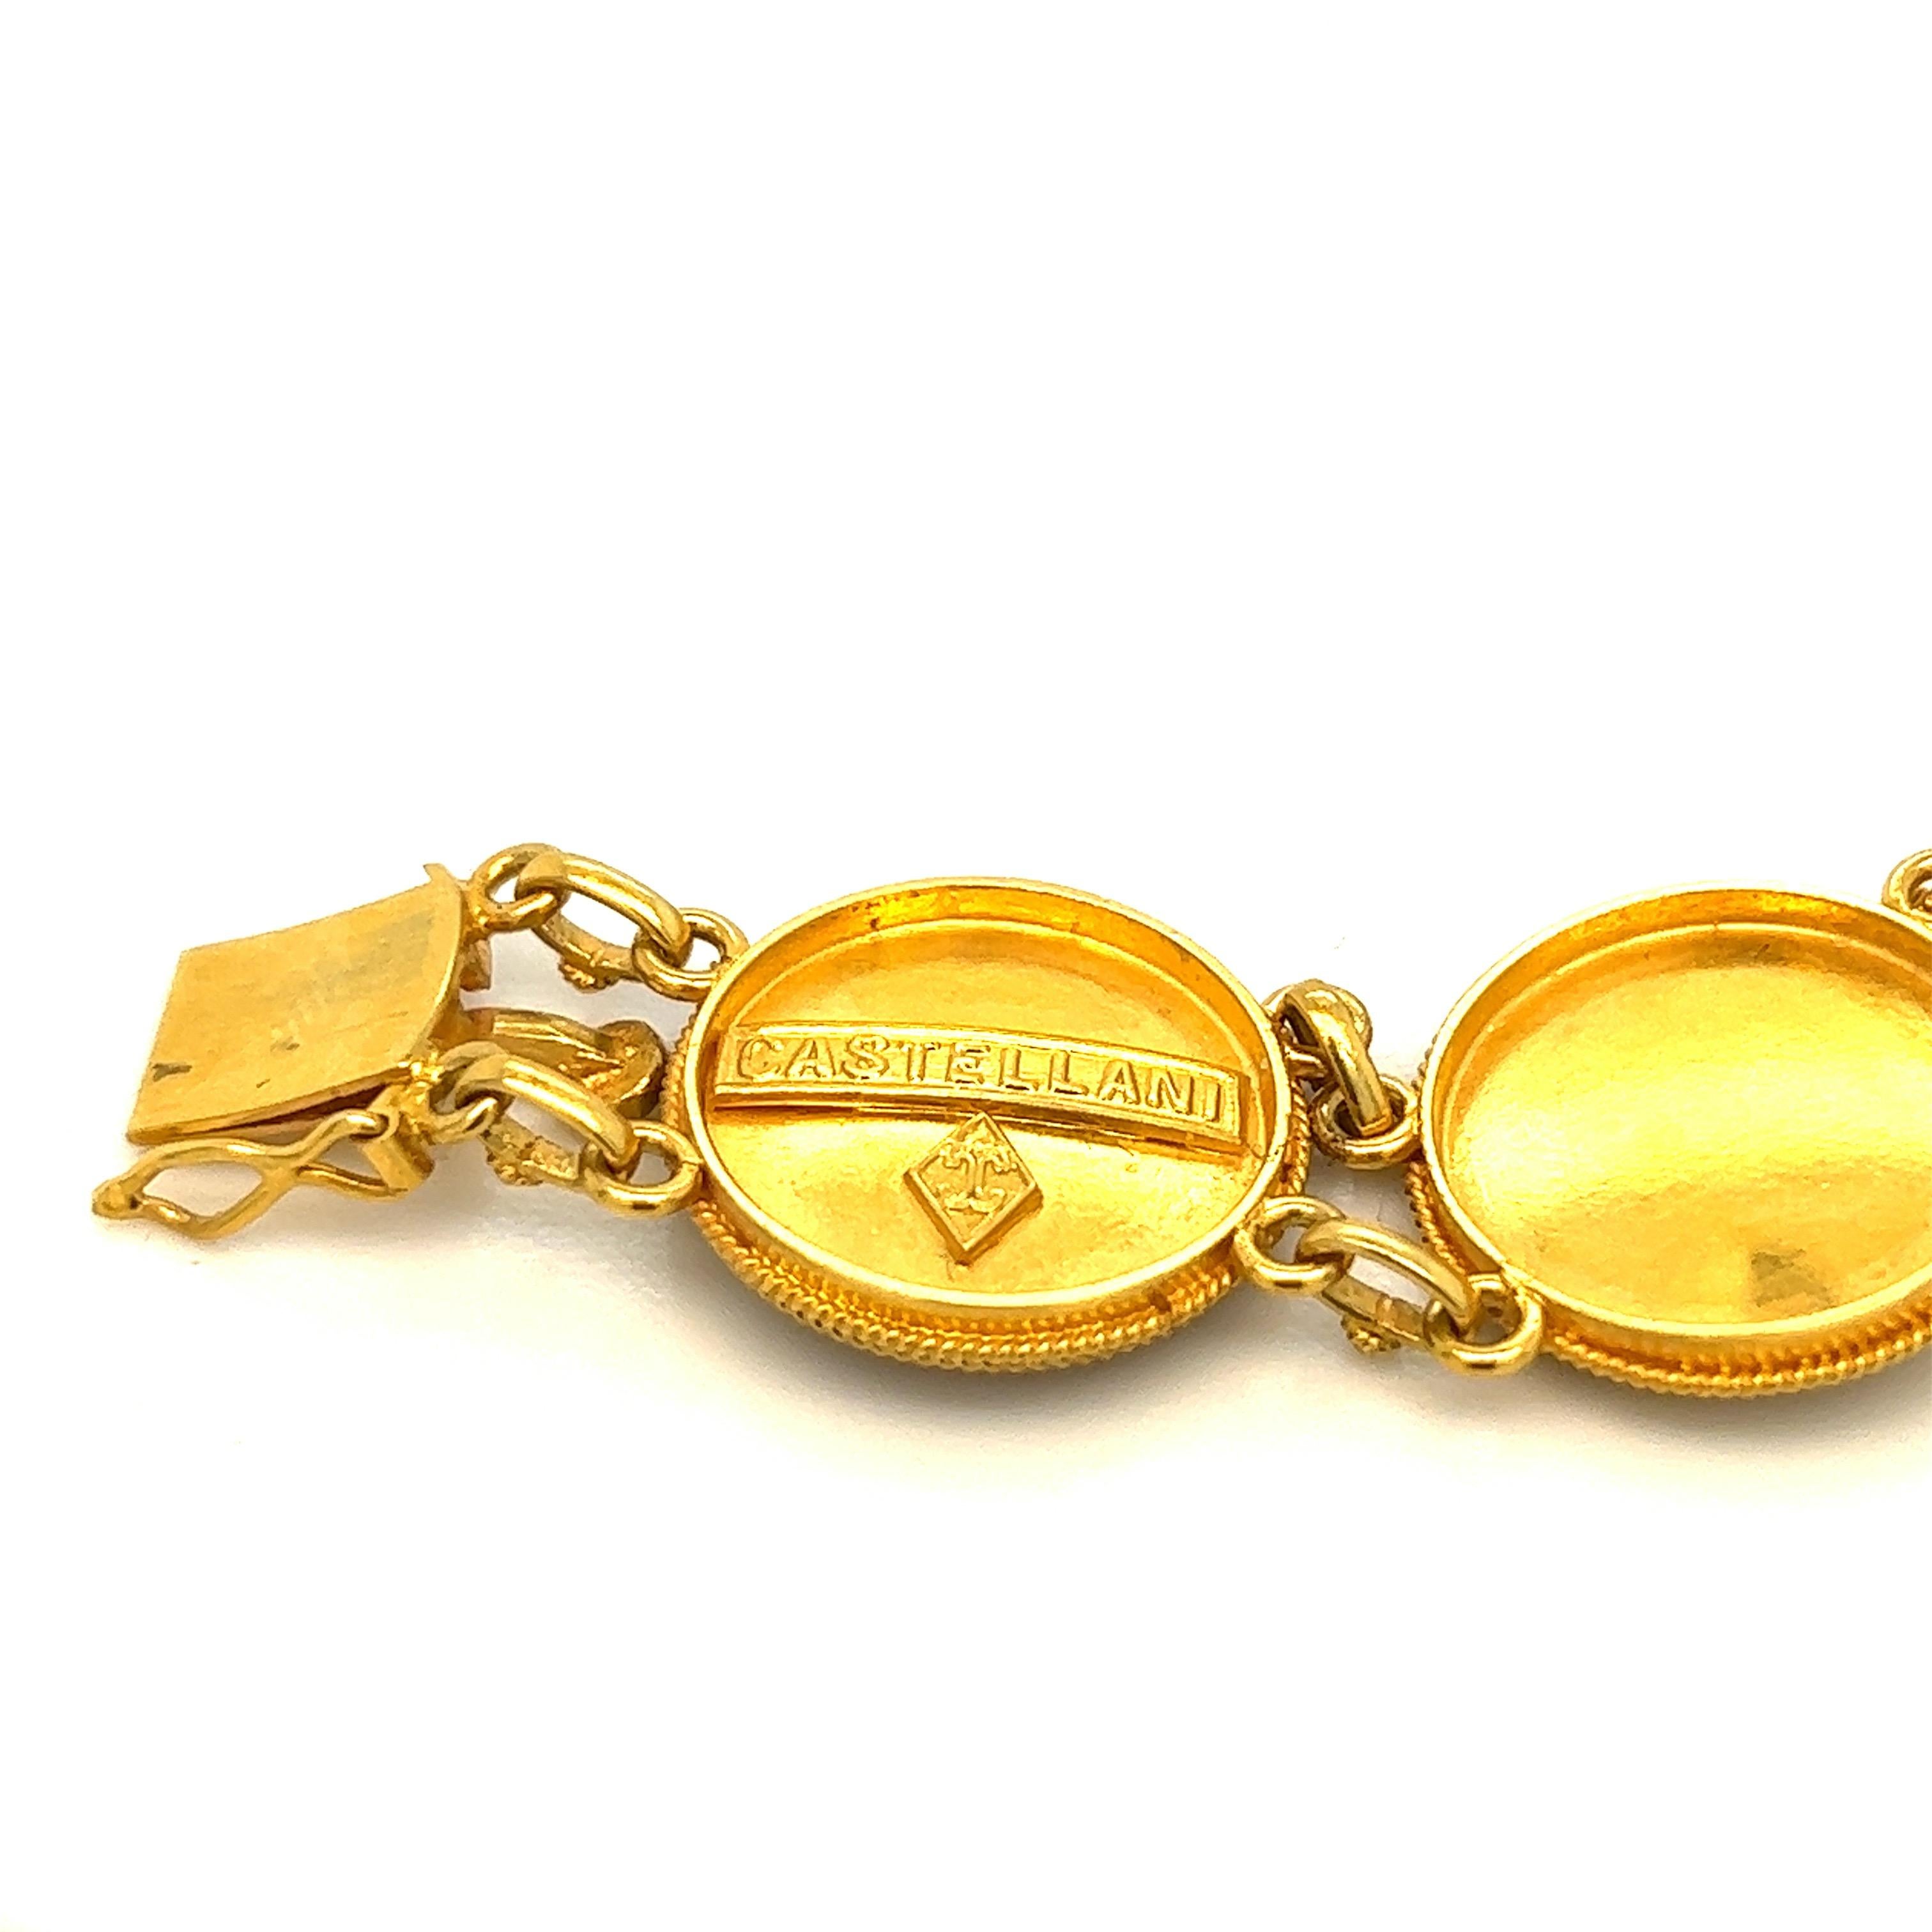 Castellani Gold 15kt Filigree Work Bracelet For Sale 2